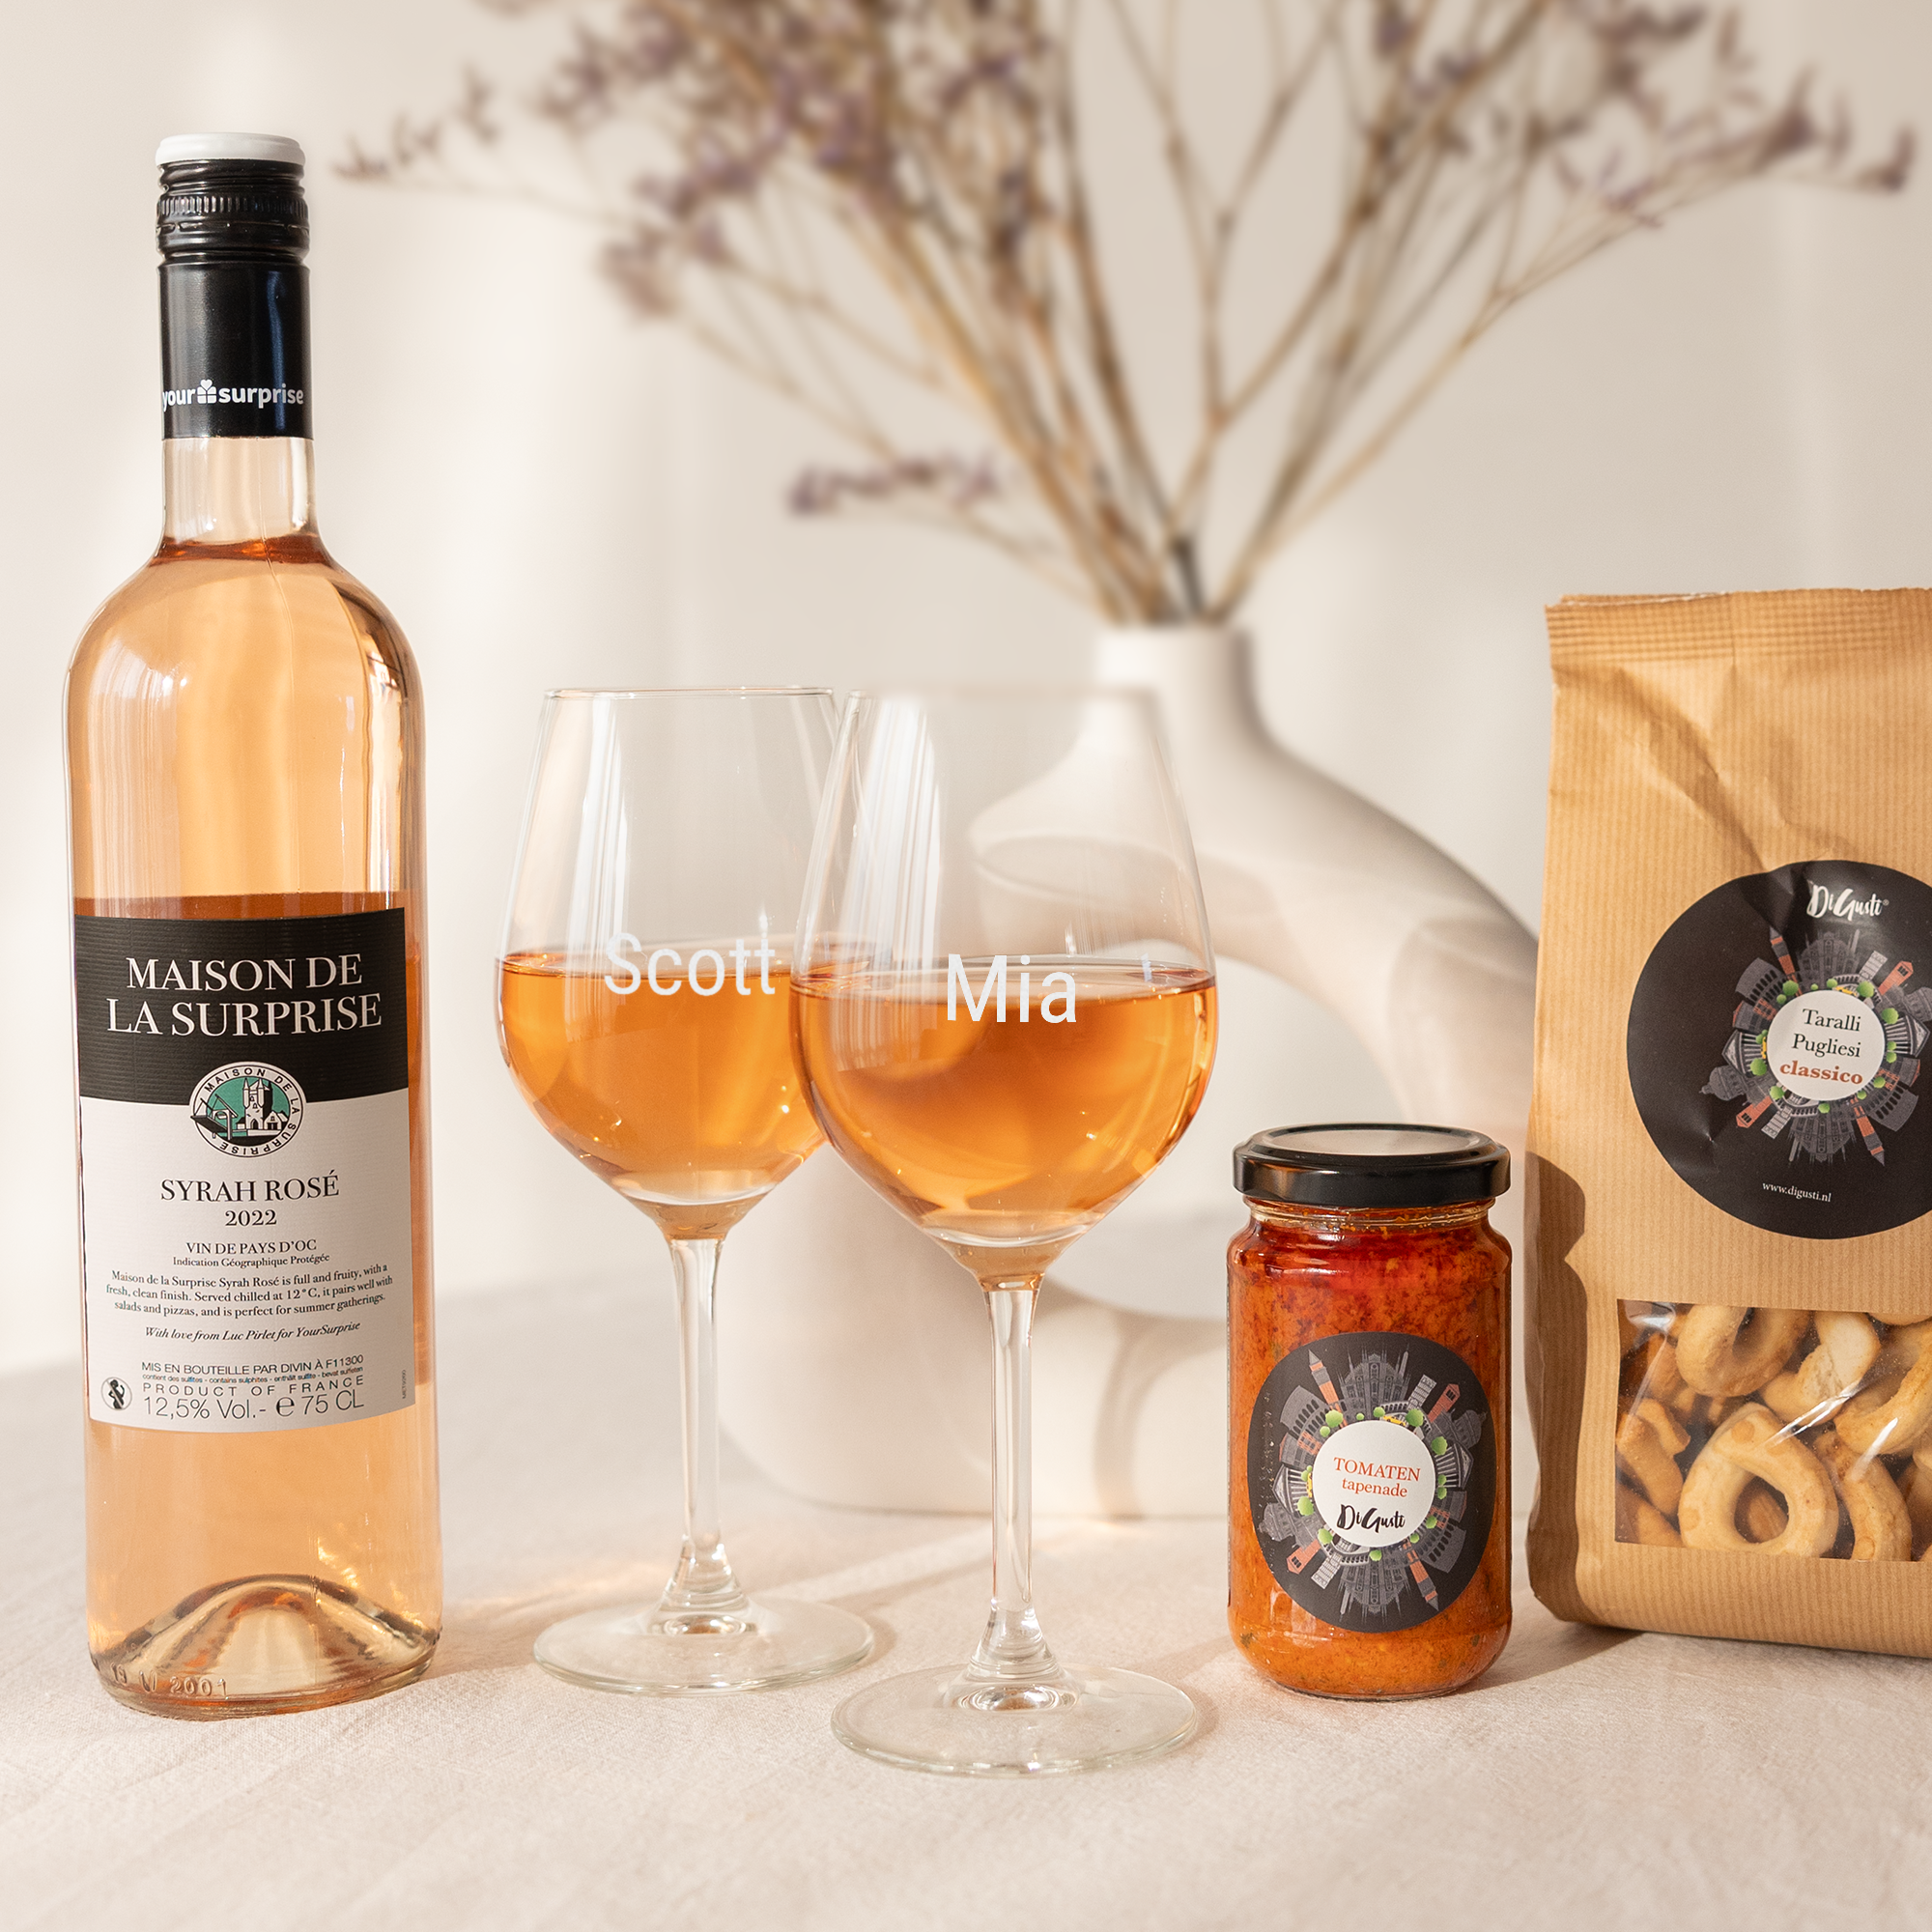 Wine & snacks gift set - Rose - Engraved glasses